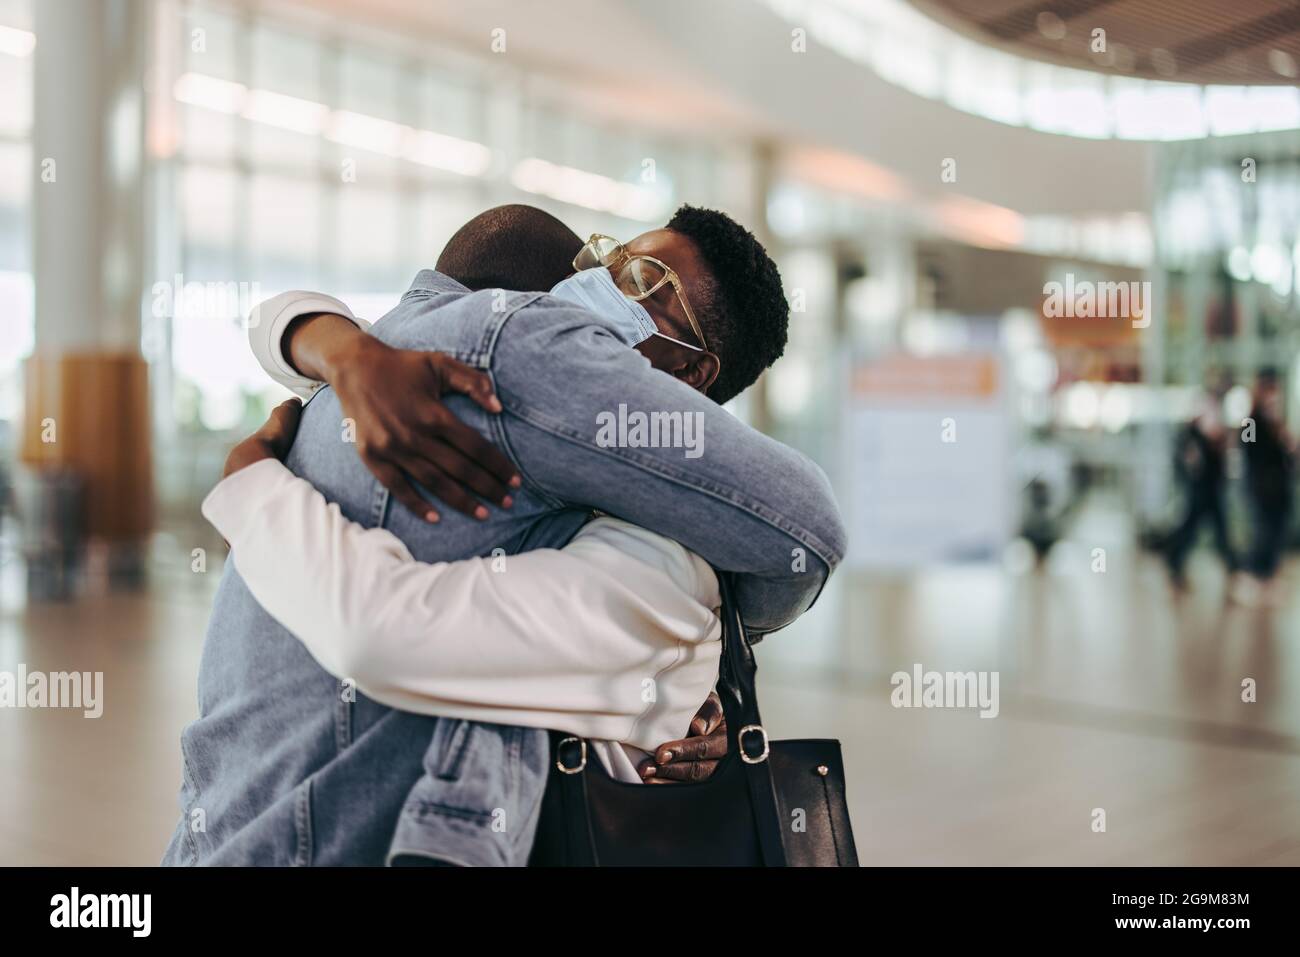 Ein Touristenpaar umarmte Auf Wiedersehen am Abflugsteig des Flughafens. Frau wird von ihrem Mann am Flughafen auf Wiedersehen umarmt. Stockfoto